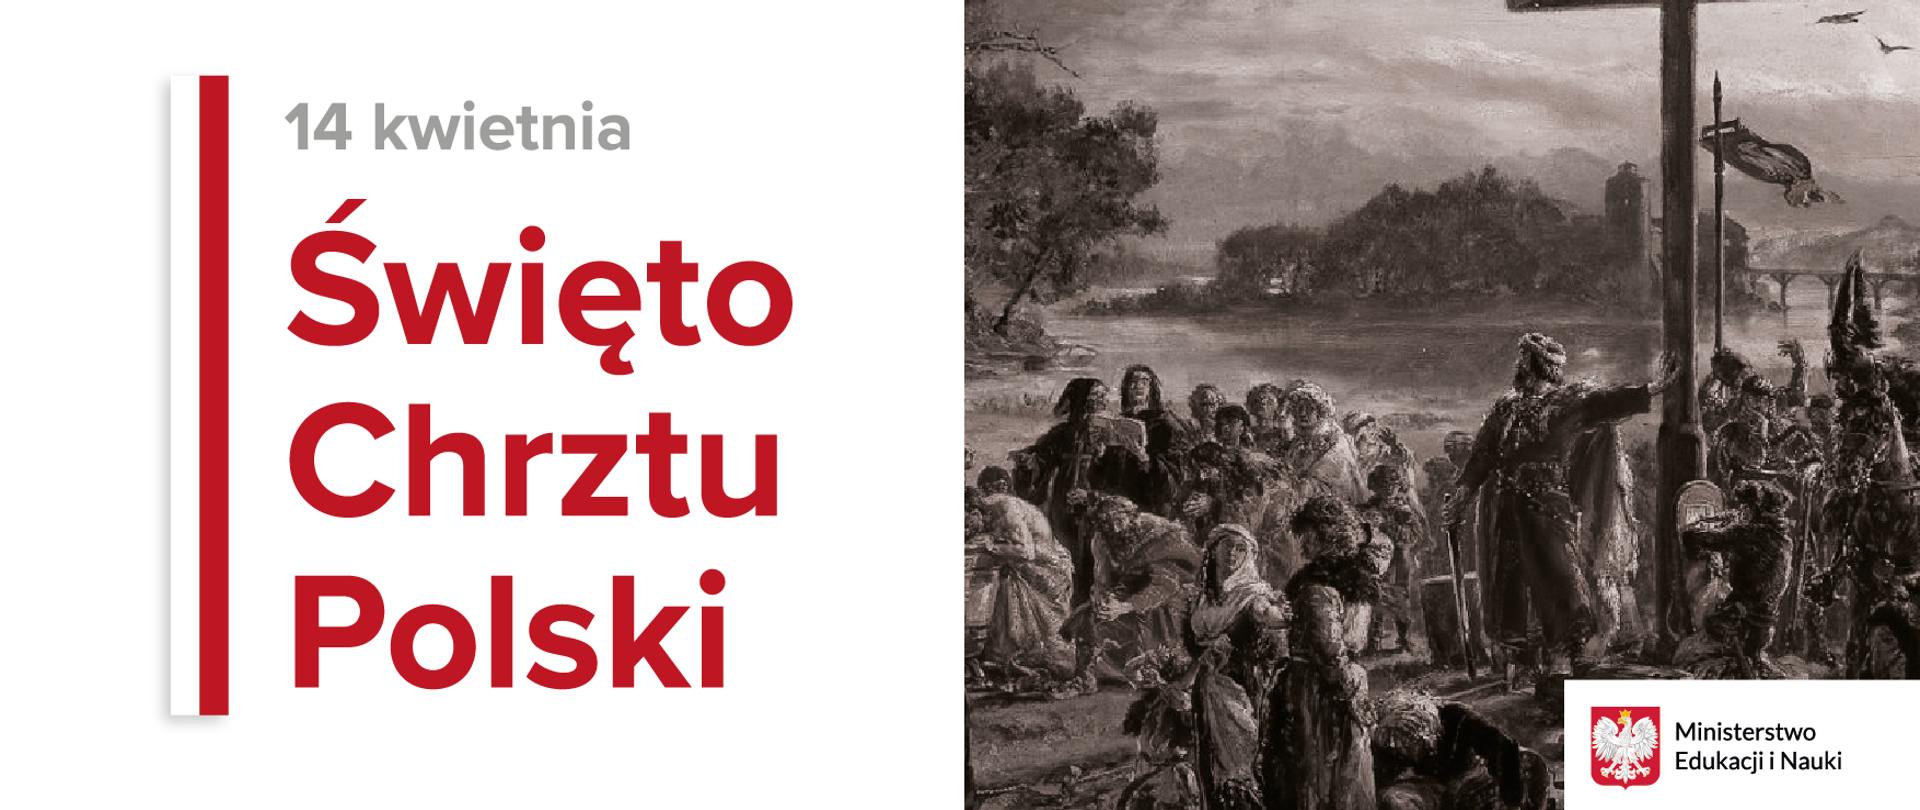 Grafika z tekstem: "14 kwietnia – Święto Chrztu Polski"